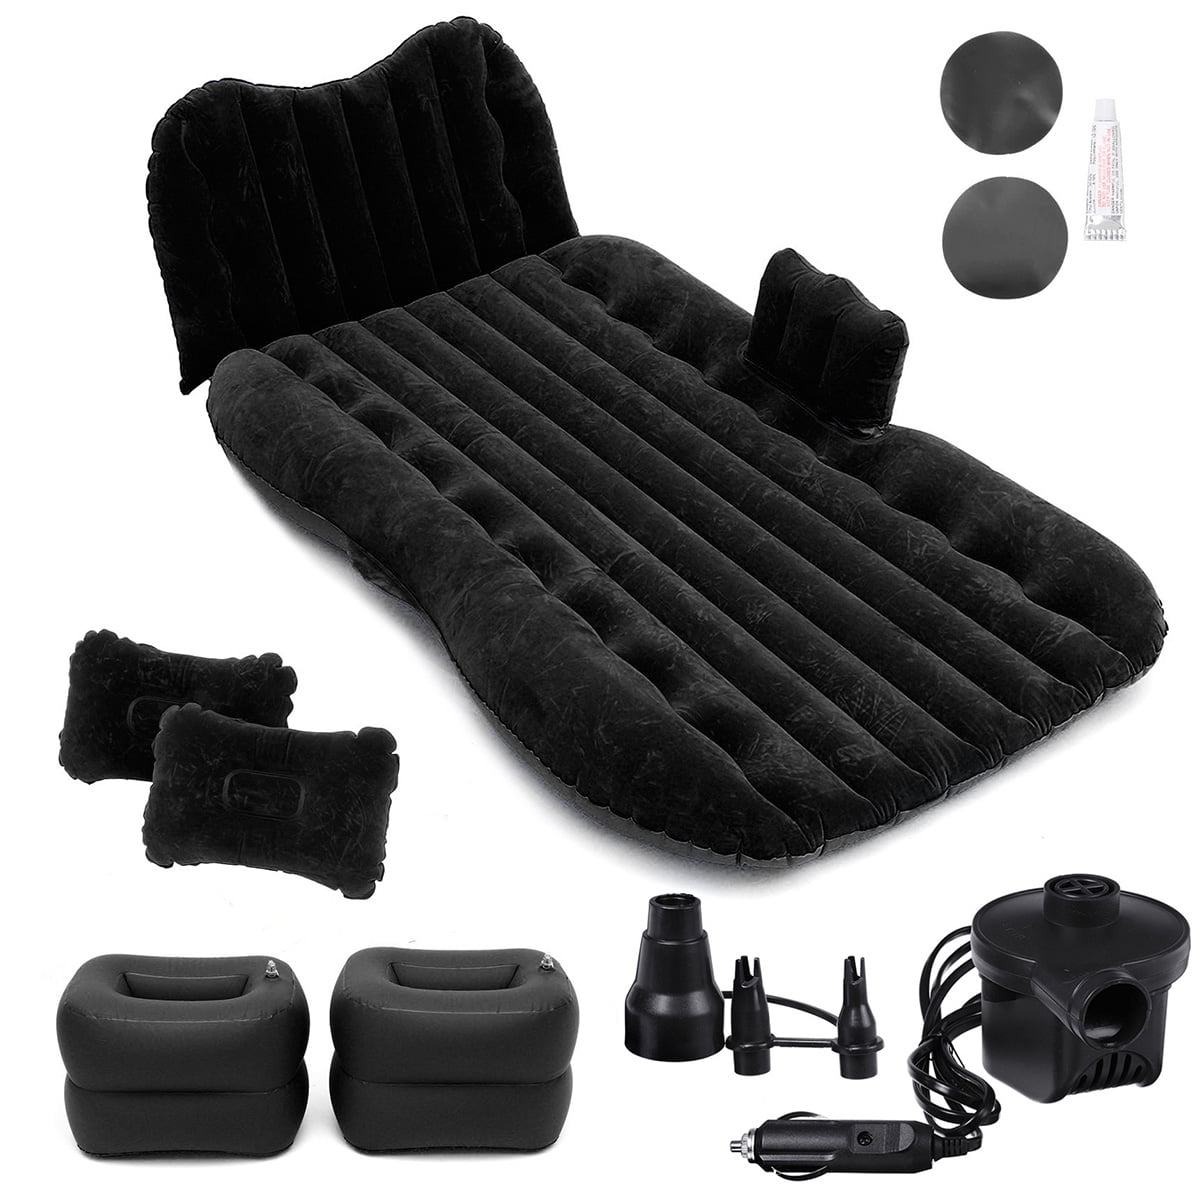 Car SUV Air Bed Sleep Travel Inflatable Mattress Seat Cushion Mat Camping w Pump 